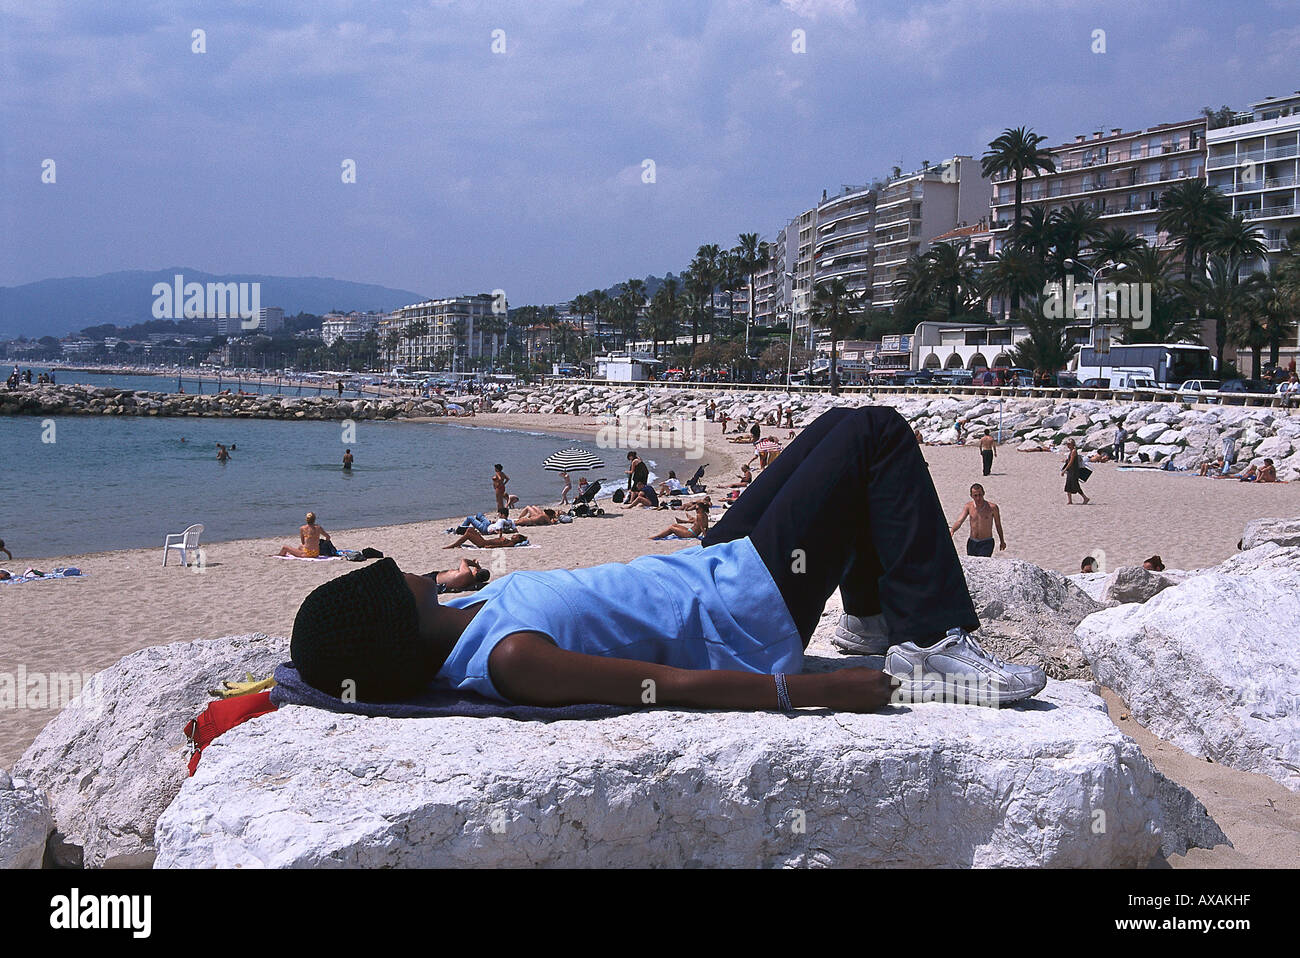 Plage, Plage du Midi, Cannes Côte d'Azur, France Banque D'Images